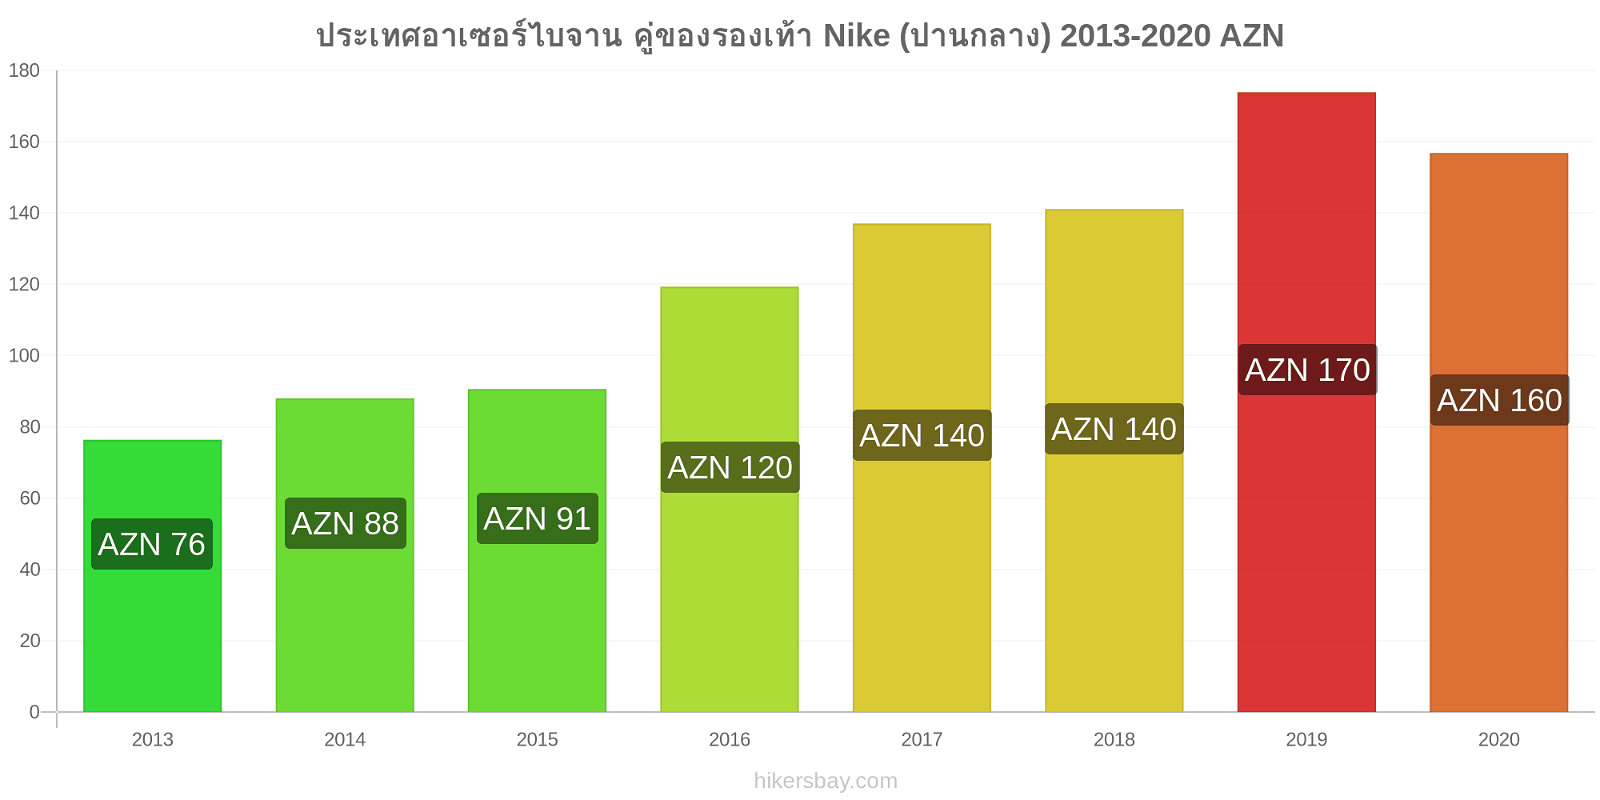 ประเทศอาเซอร์ไบจาน การเปลี่ยนแปลงราคา คู่ของรองเท้า Nike (ปานกลาง) hikersbay.com